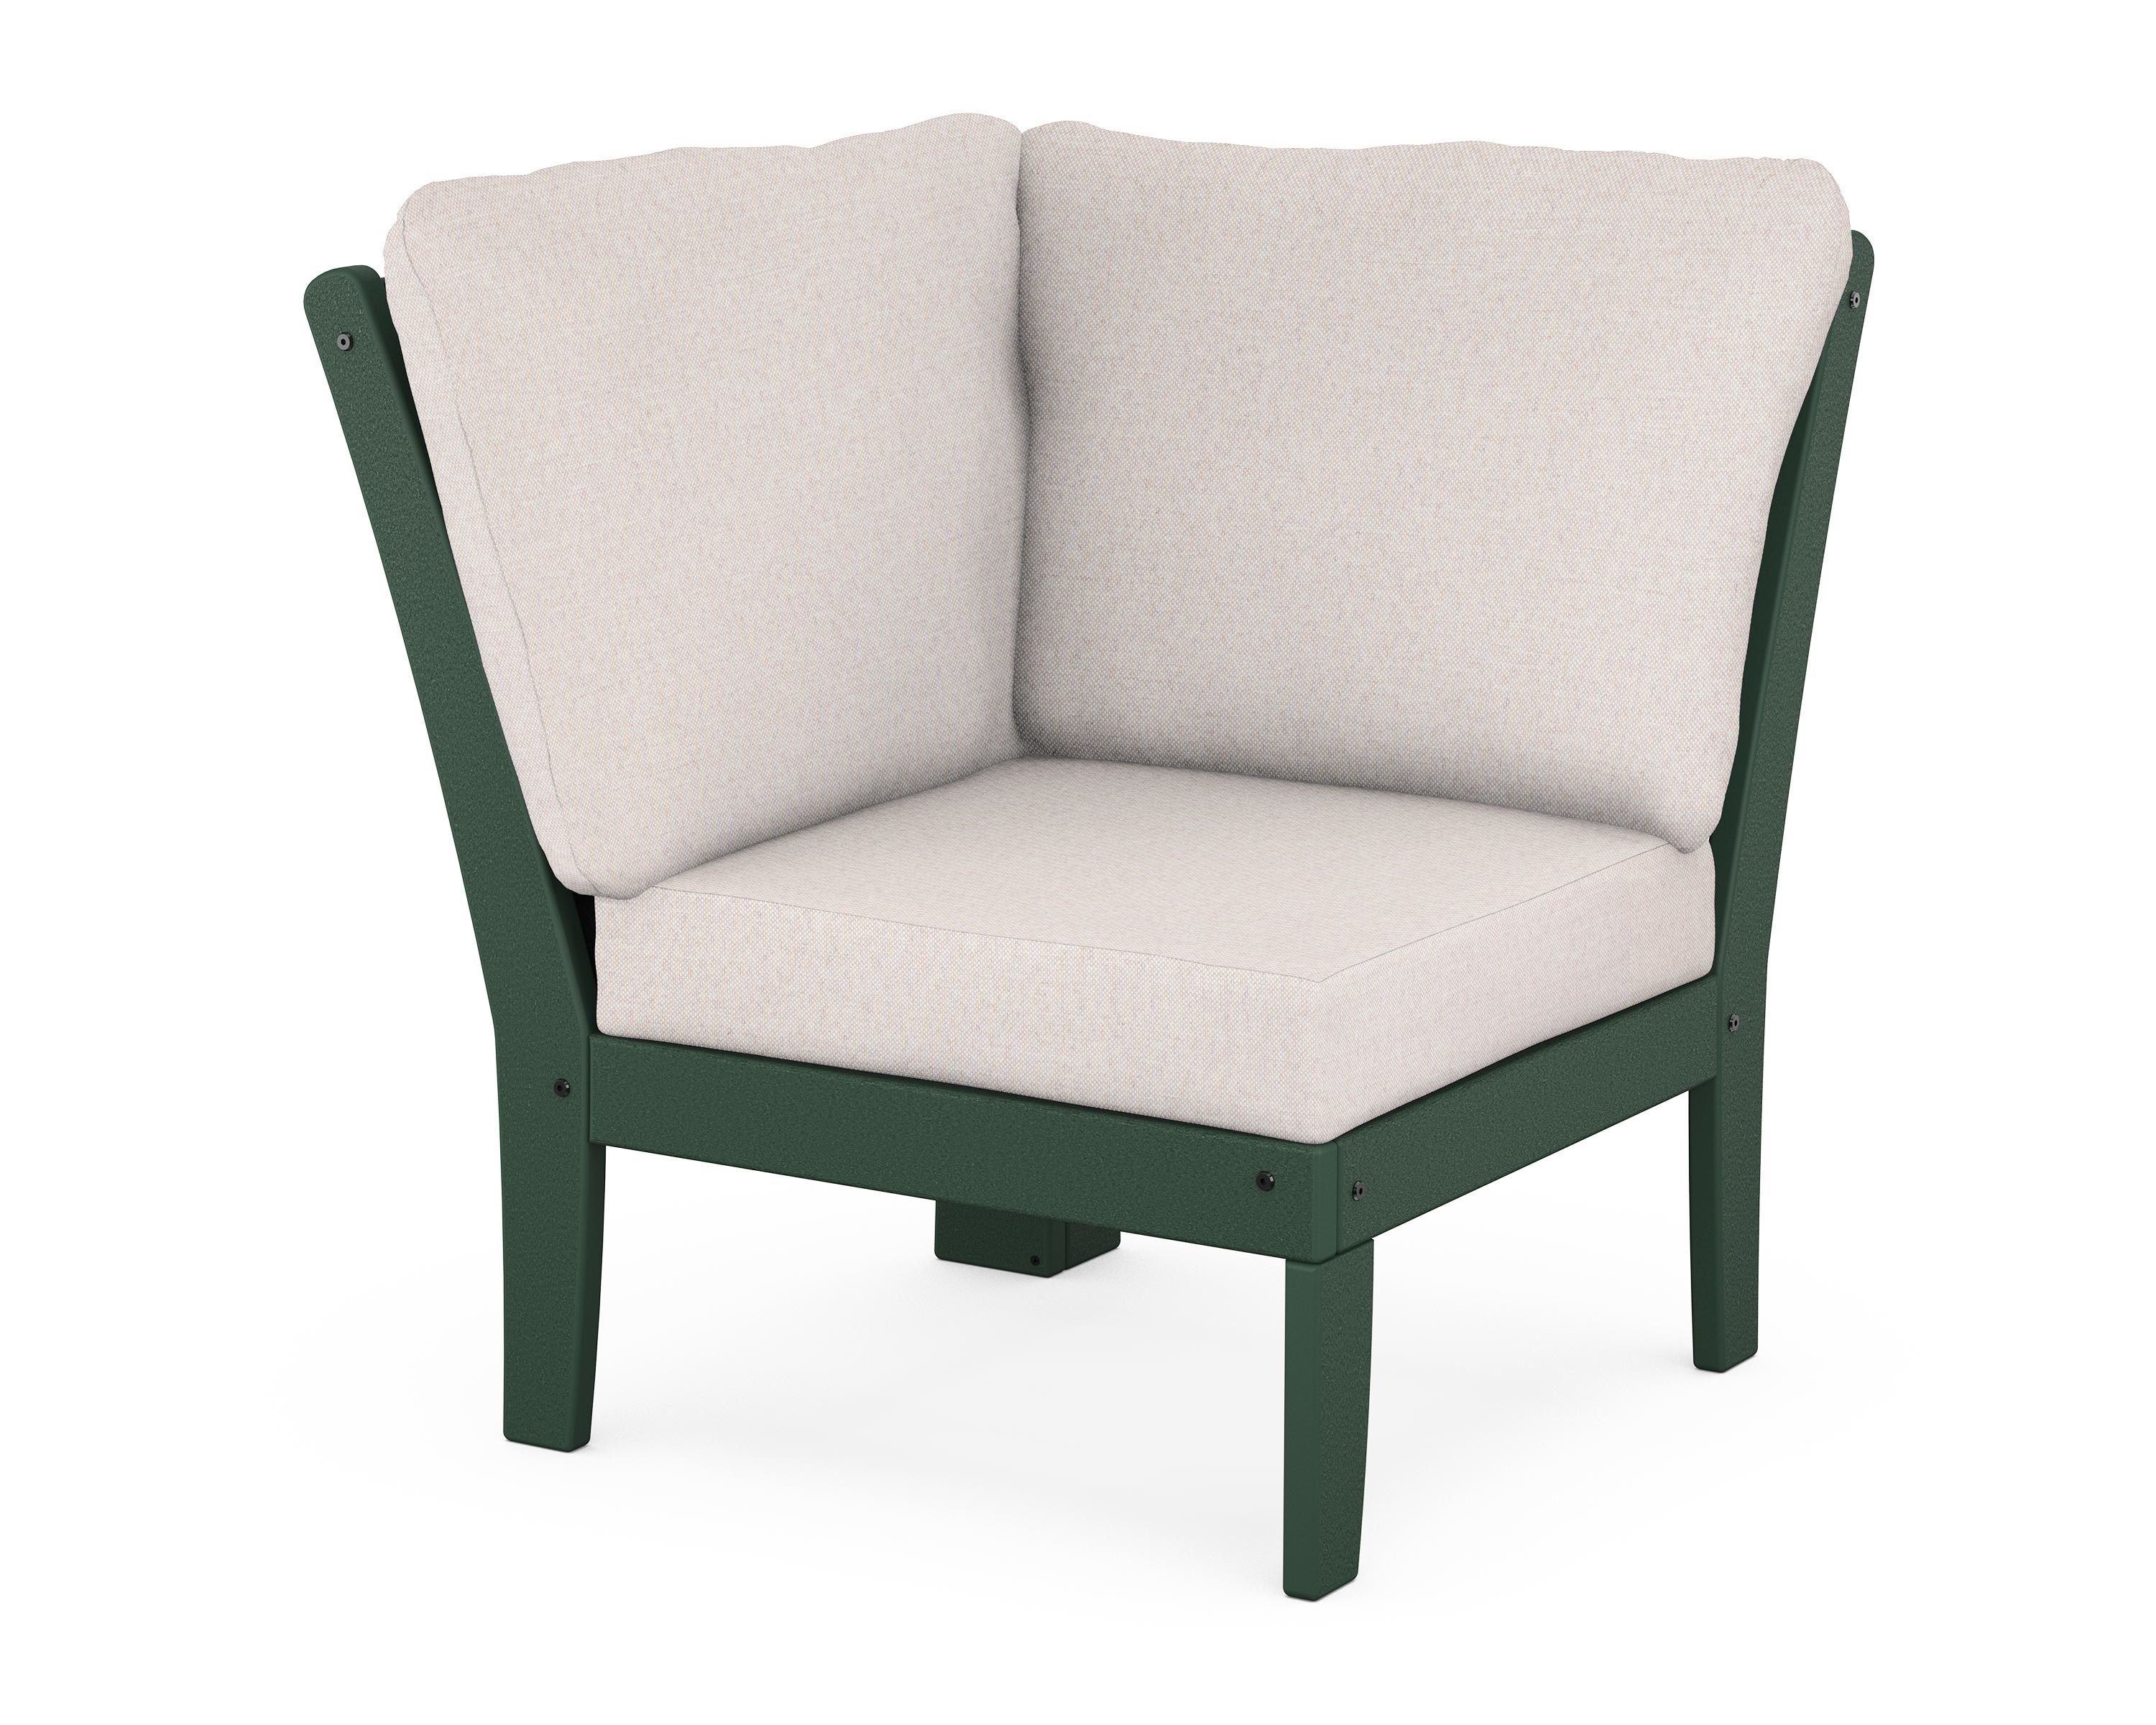 POLYWOOD Braxton Modular Corner Chair